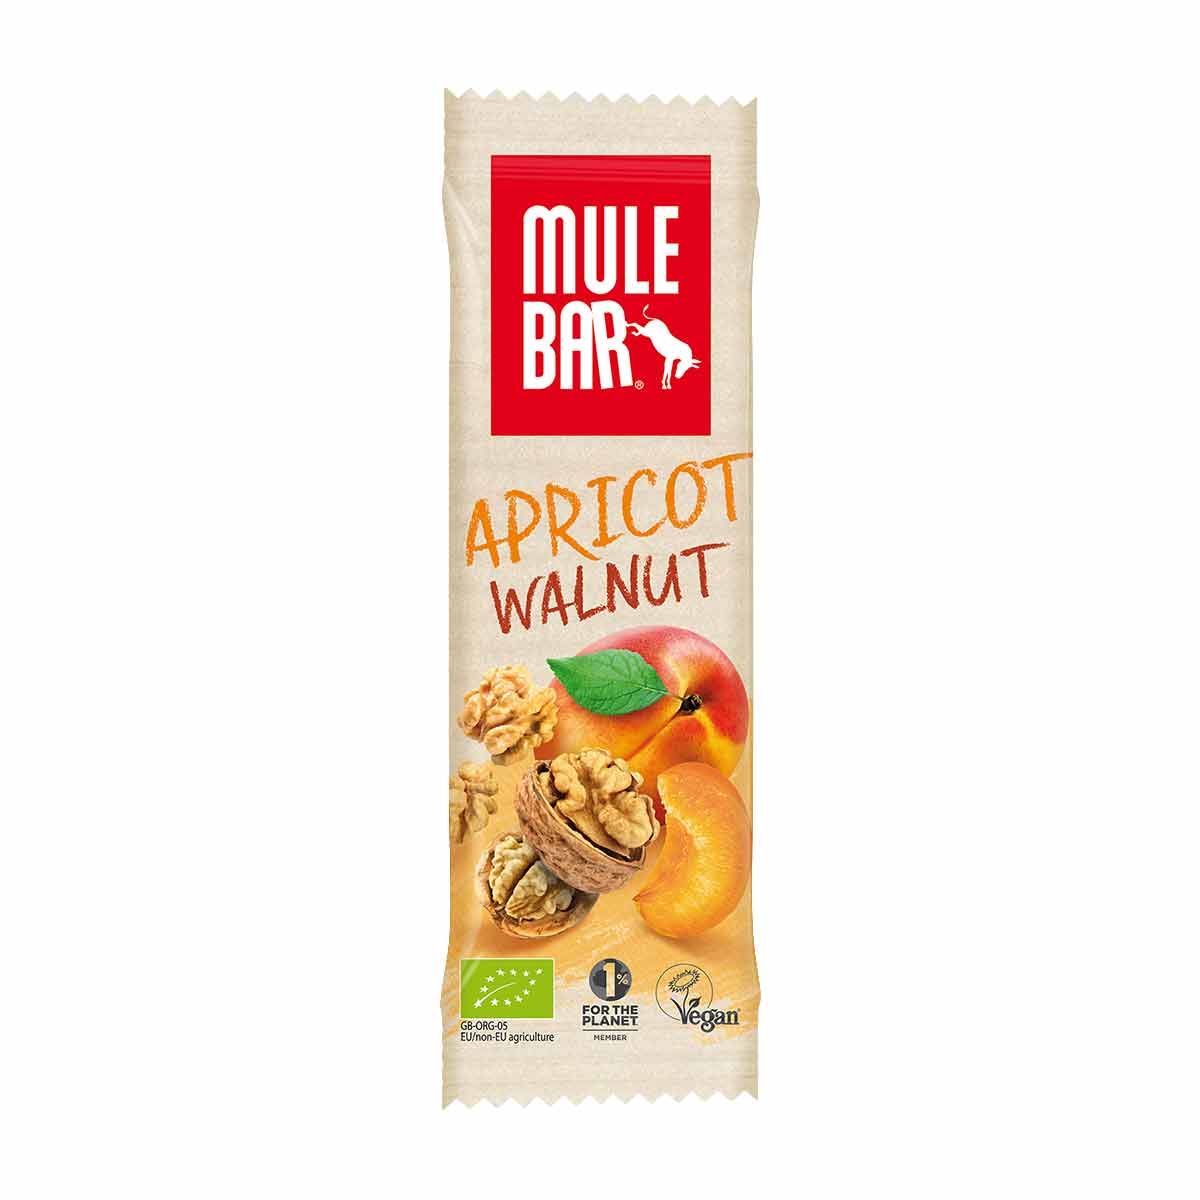 Mulebar organic energy bar - Apricot, walnut